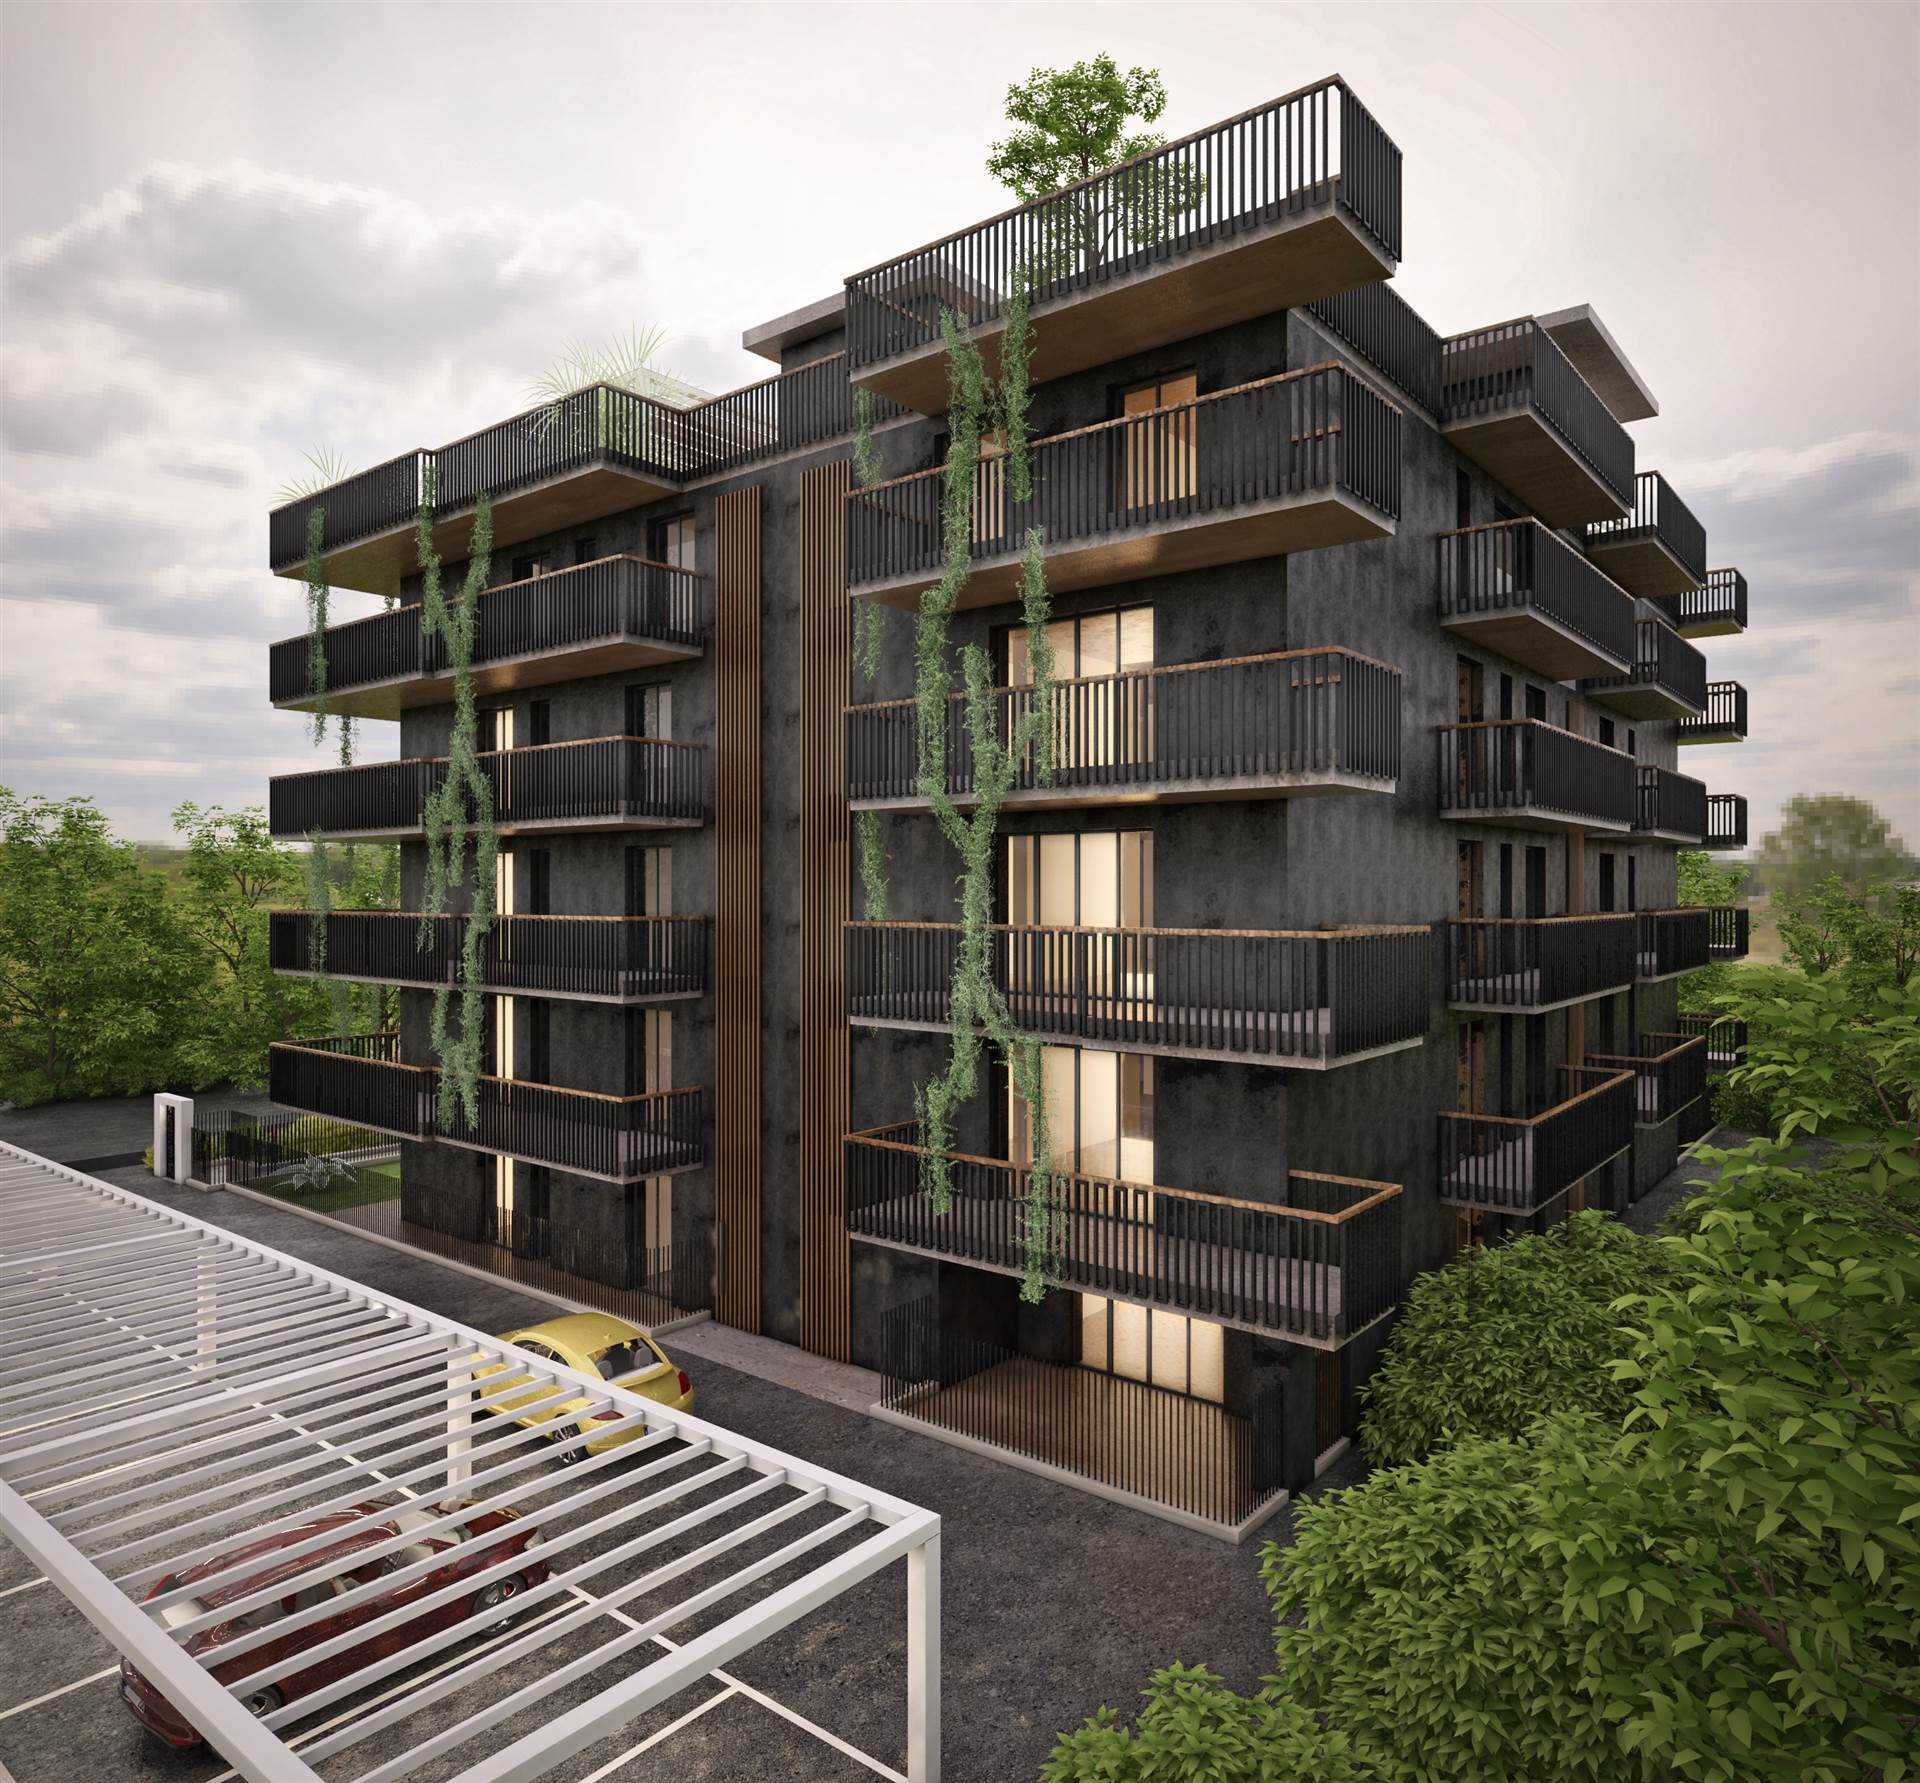 Nuova costruzione in vendita a Salerno, in Via Delle Calabrie 19. L'immobile di 86 mq si trova al primo piano ed è caratterizzato dalla classe 